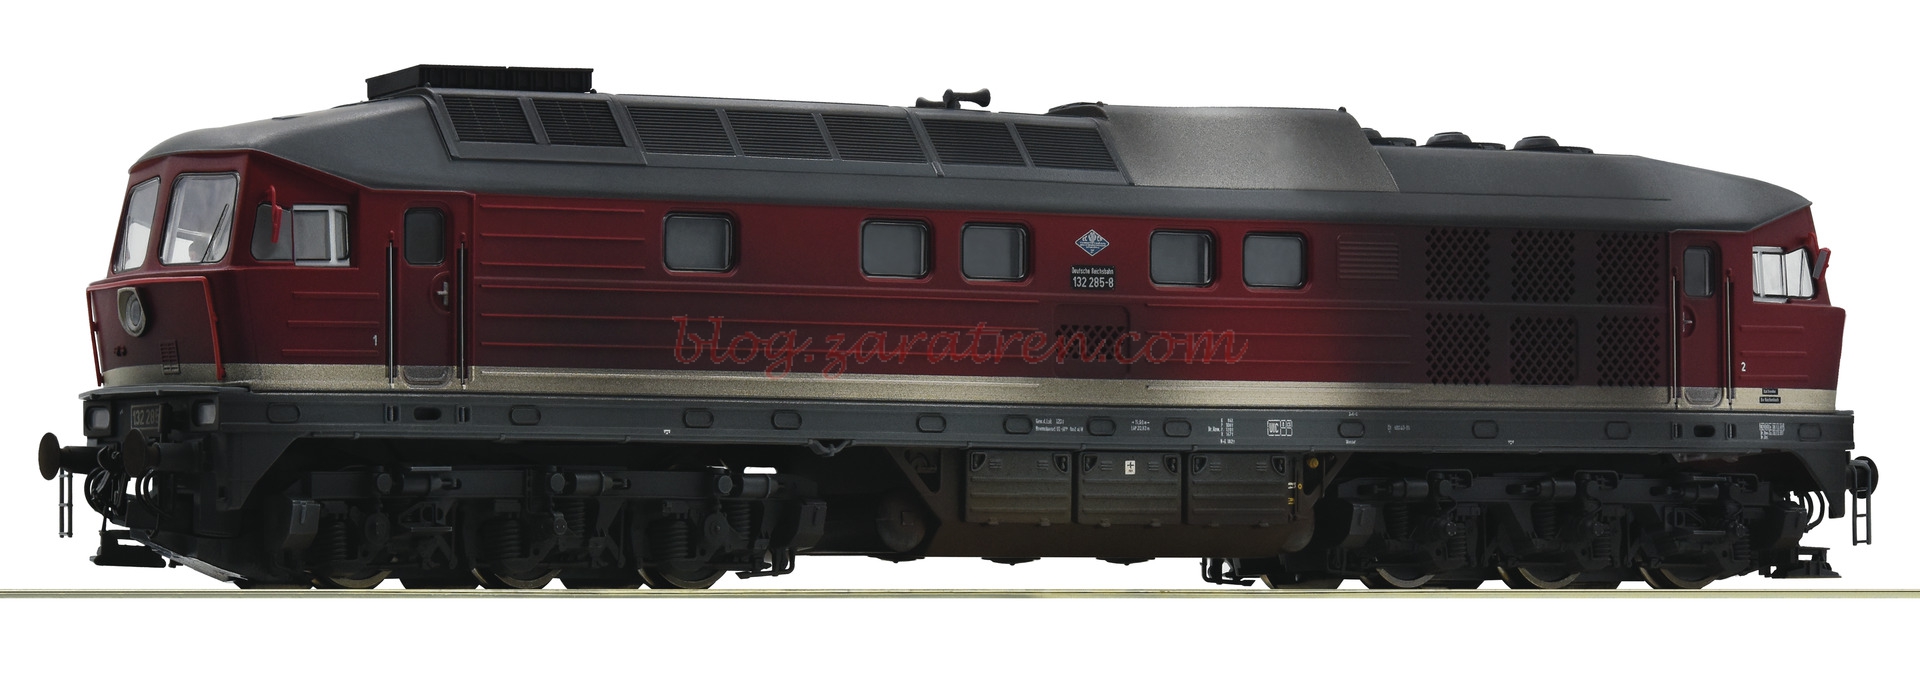 Roco – Locomotora Diesel 132 285-8, DR, Analogica, Envejecida, Escala H0, Ref: 52498.